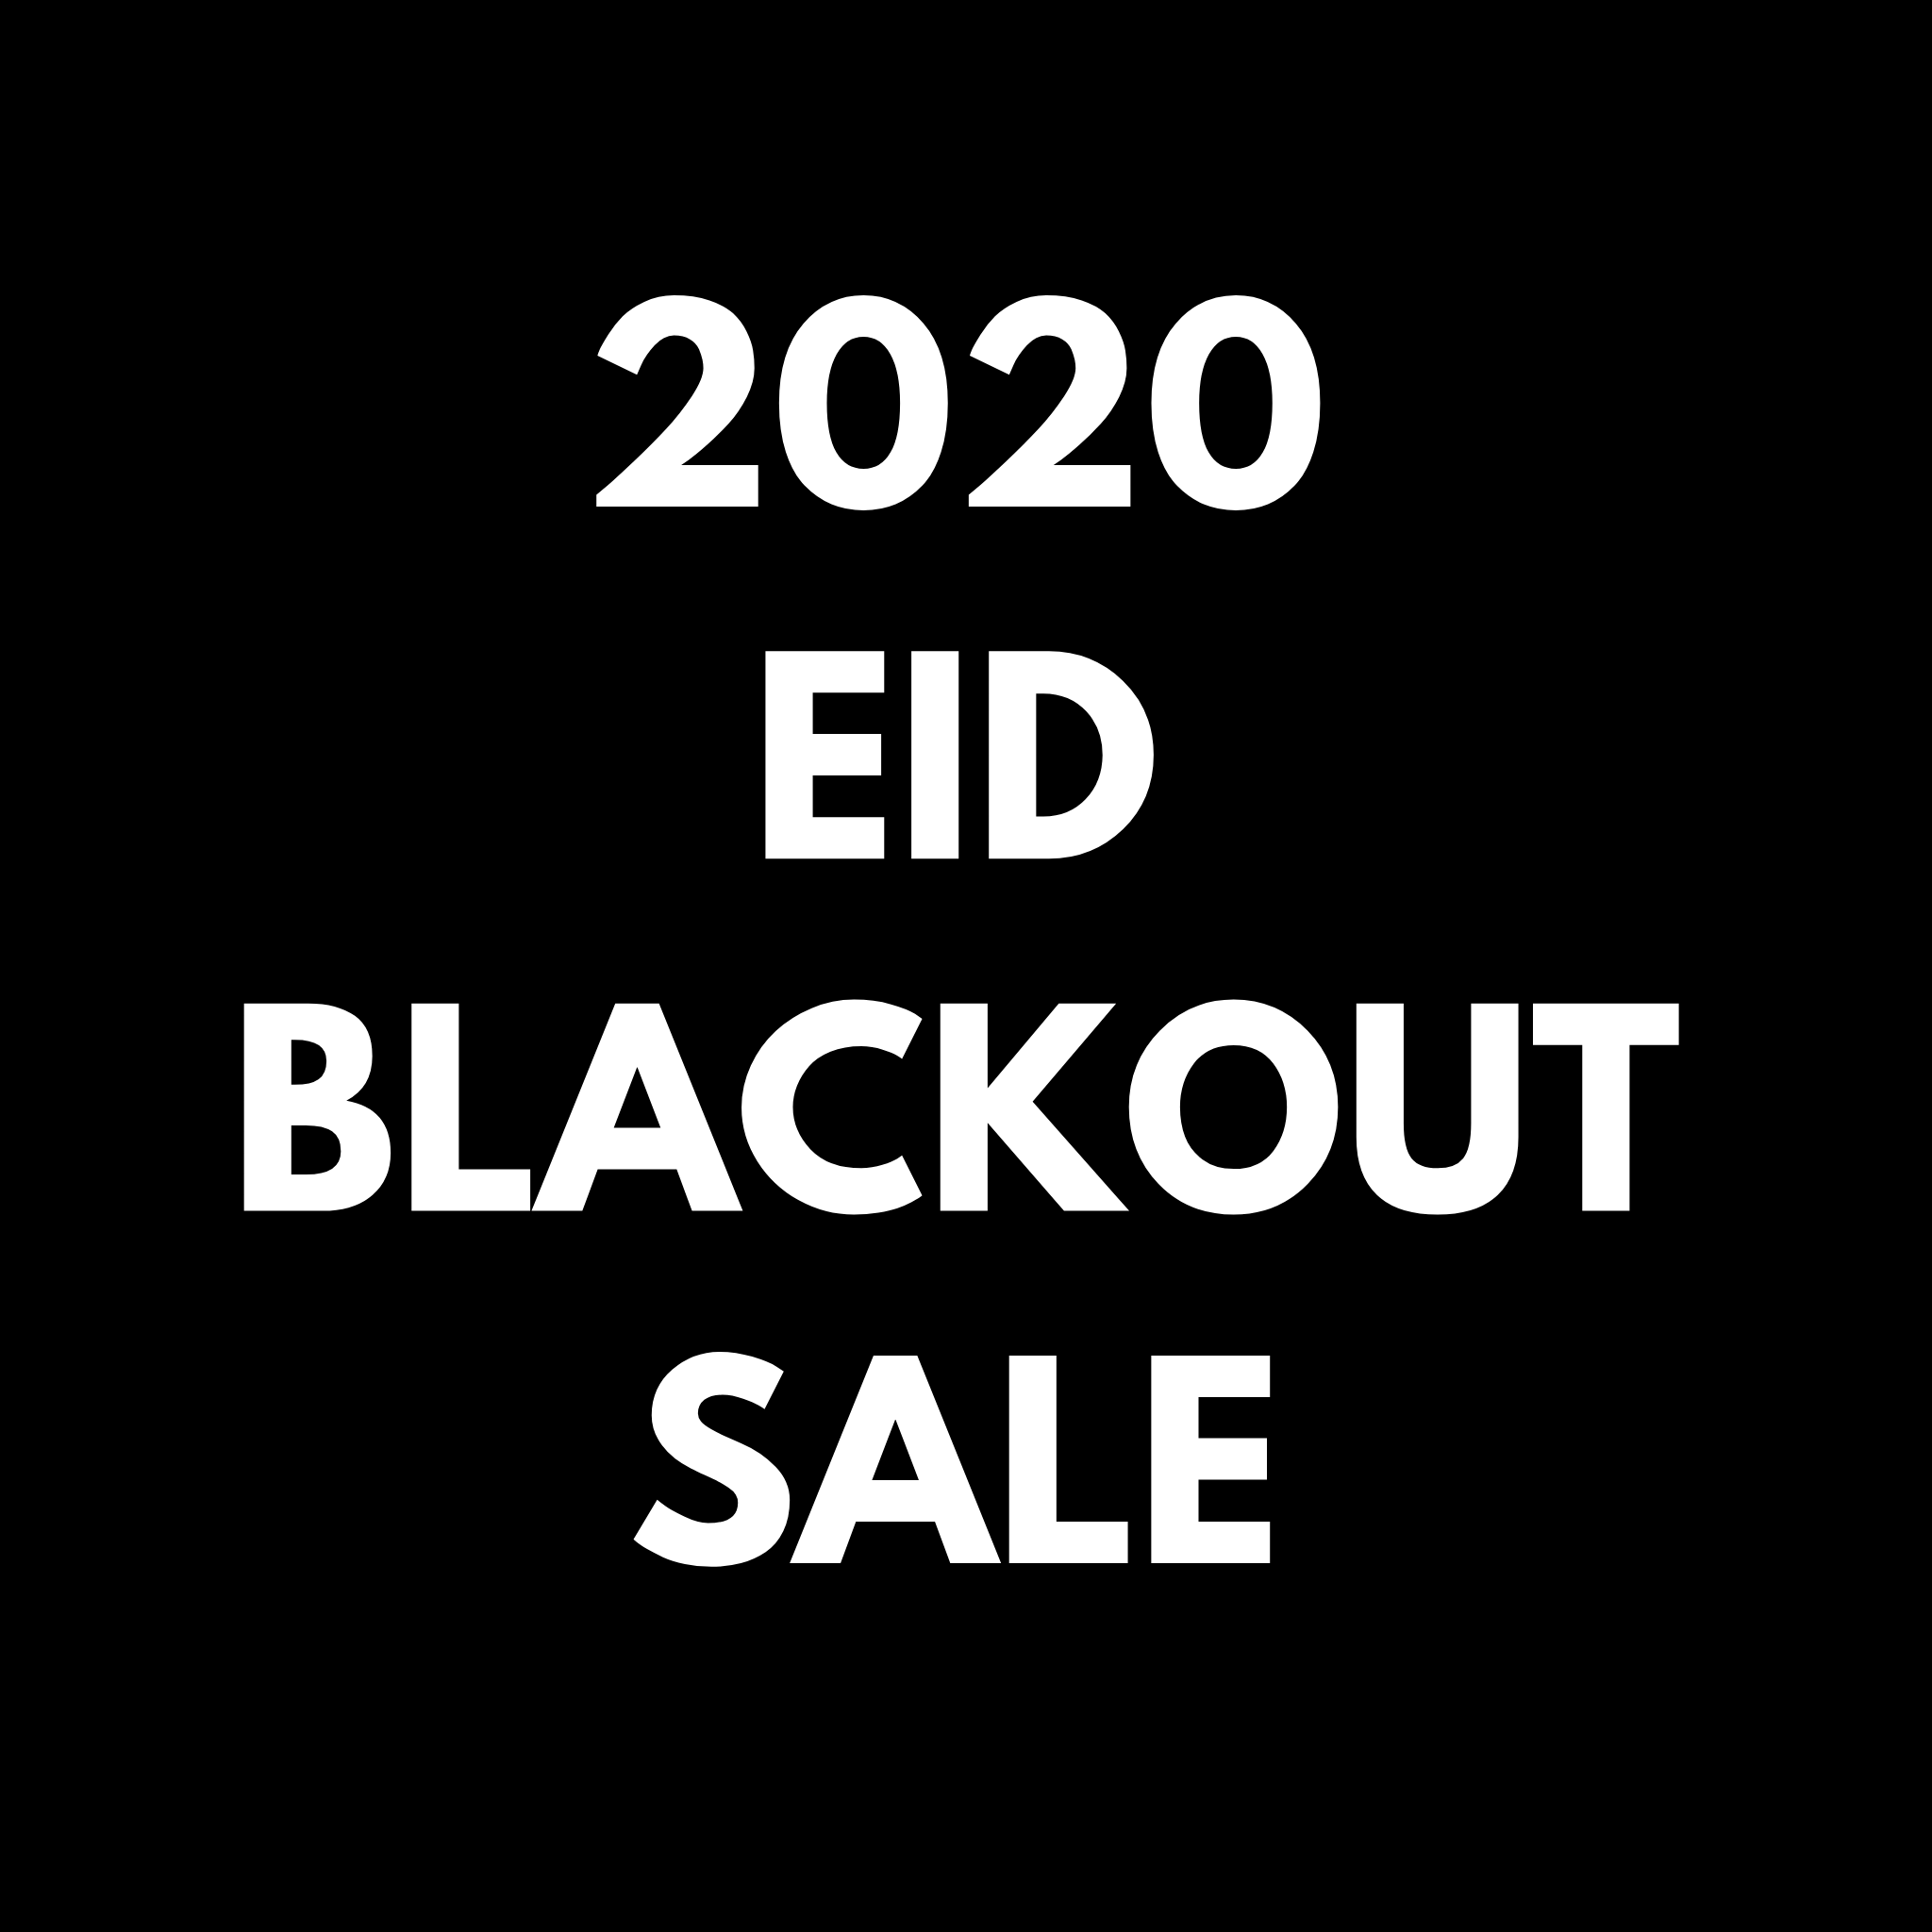 The Historic 2020 Eid Sale